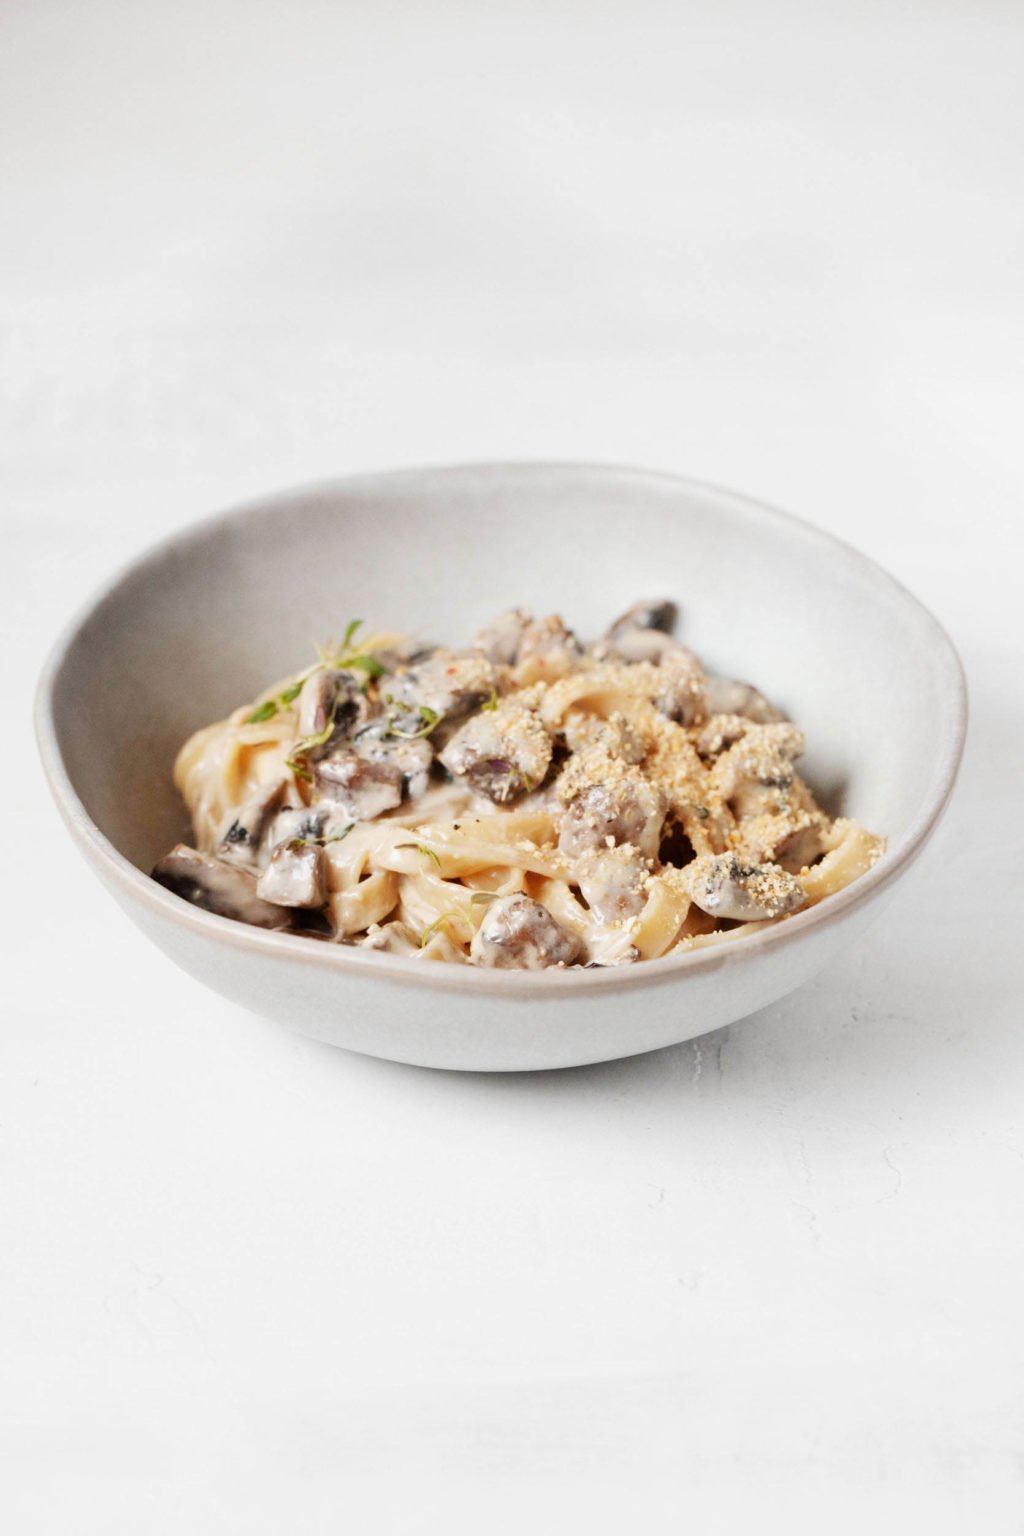 Een gekanteld beeld van een witte kom romige veganistische pasta met champignons, rustend op een witte ondergrond.